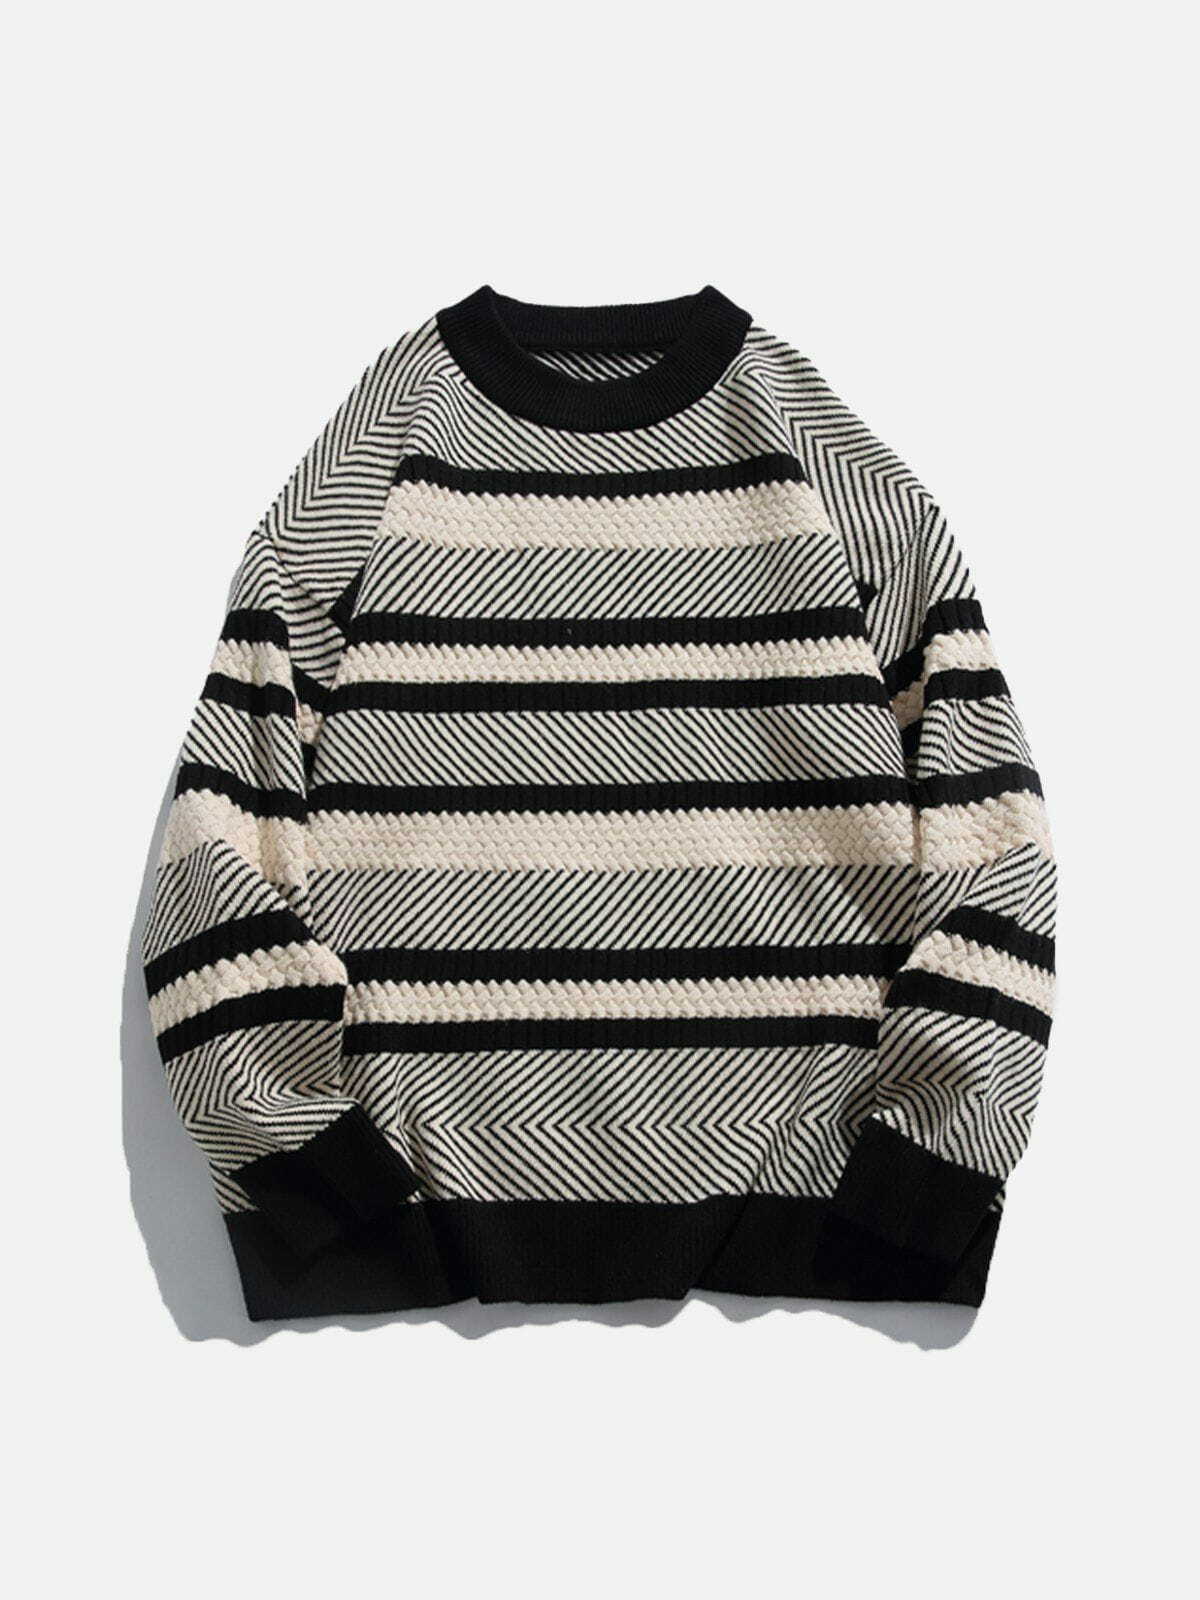 dynamic stripe knit sweater trendy & vibrant streetwear 6863